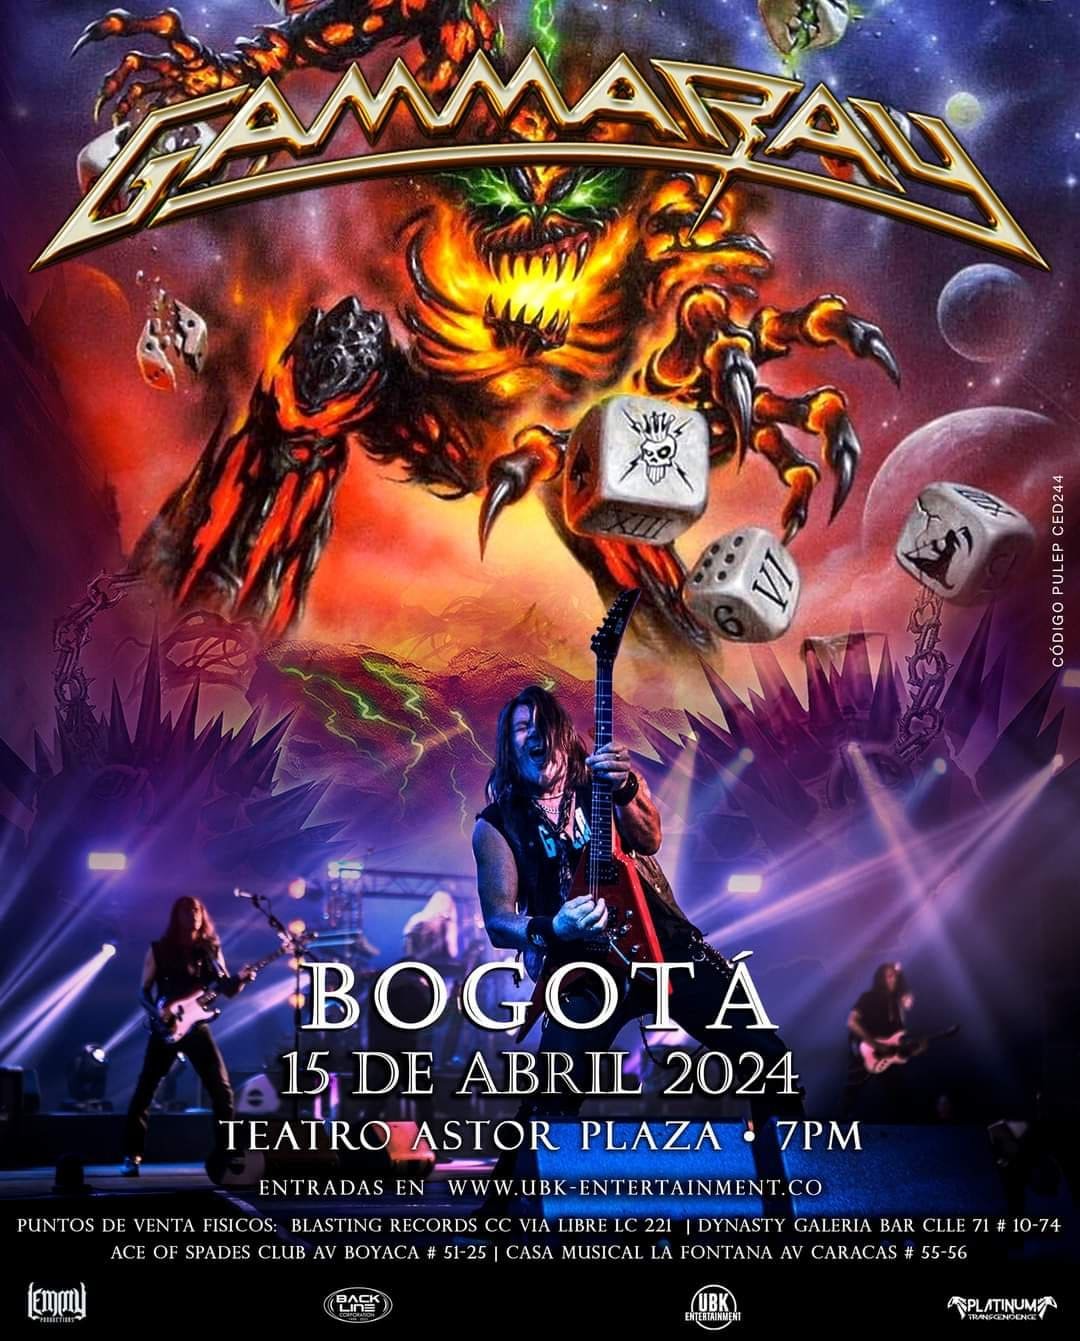 Gamma Ray cumplirá su profecía en Bogotá